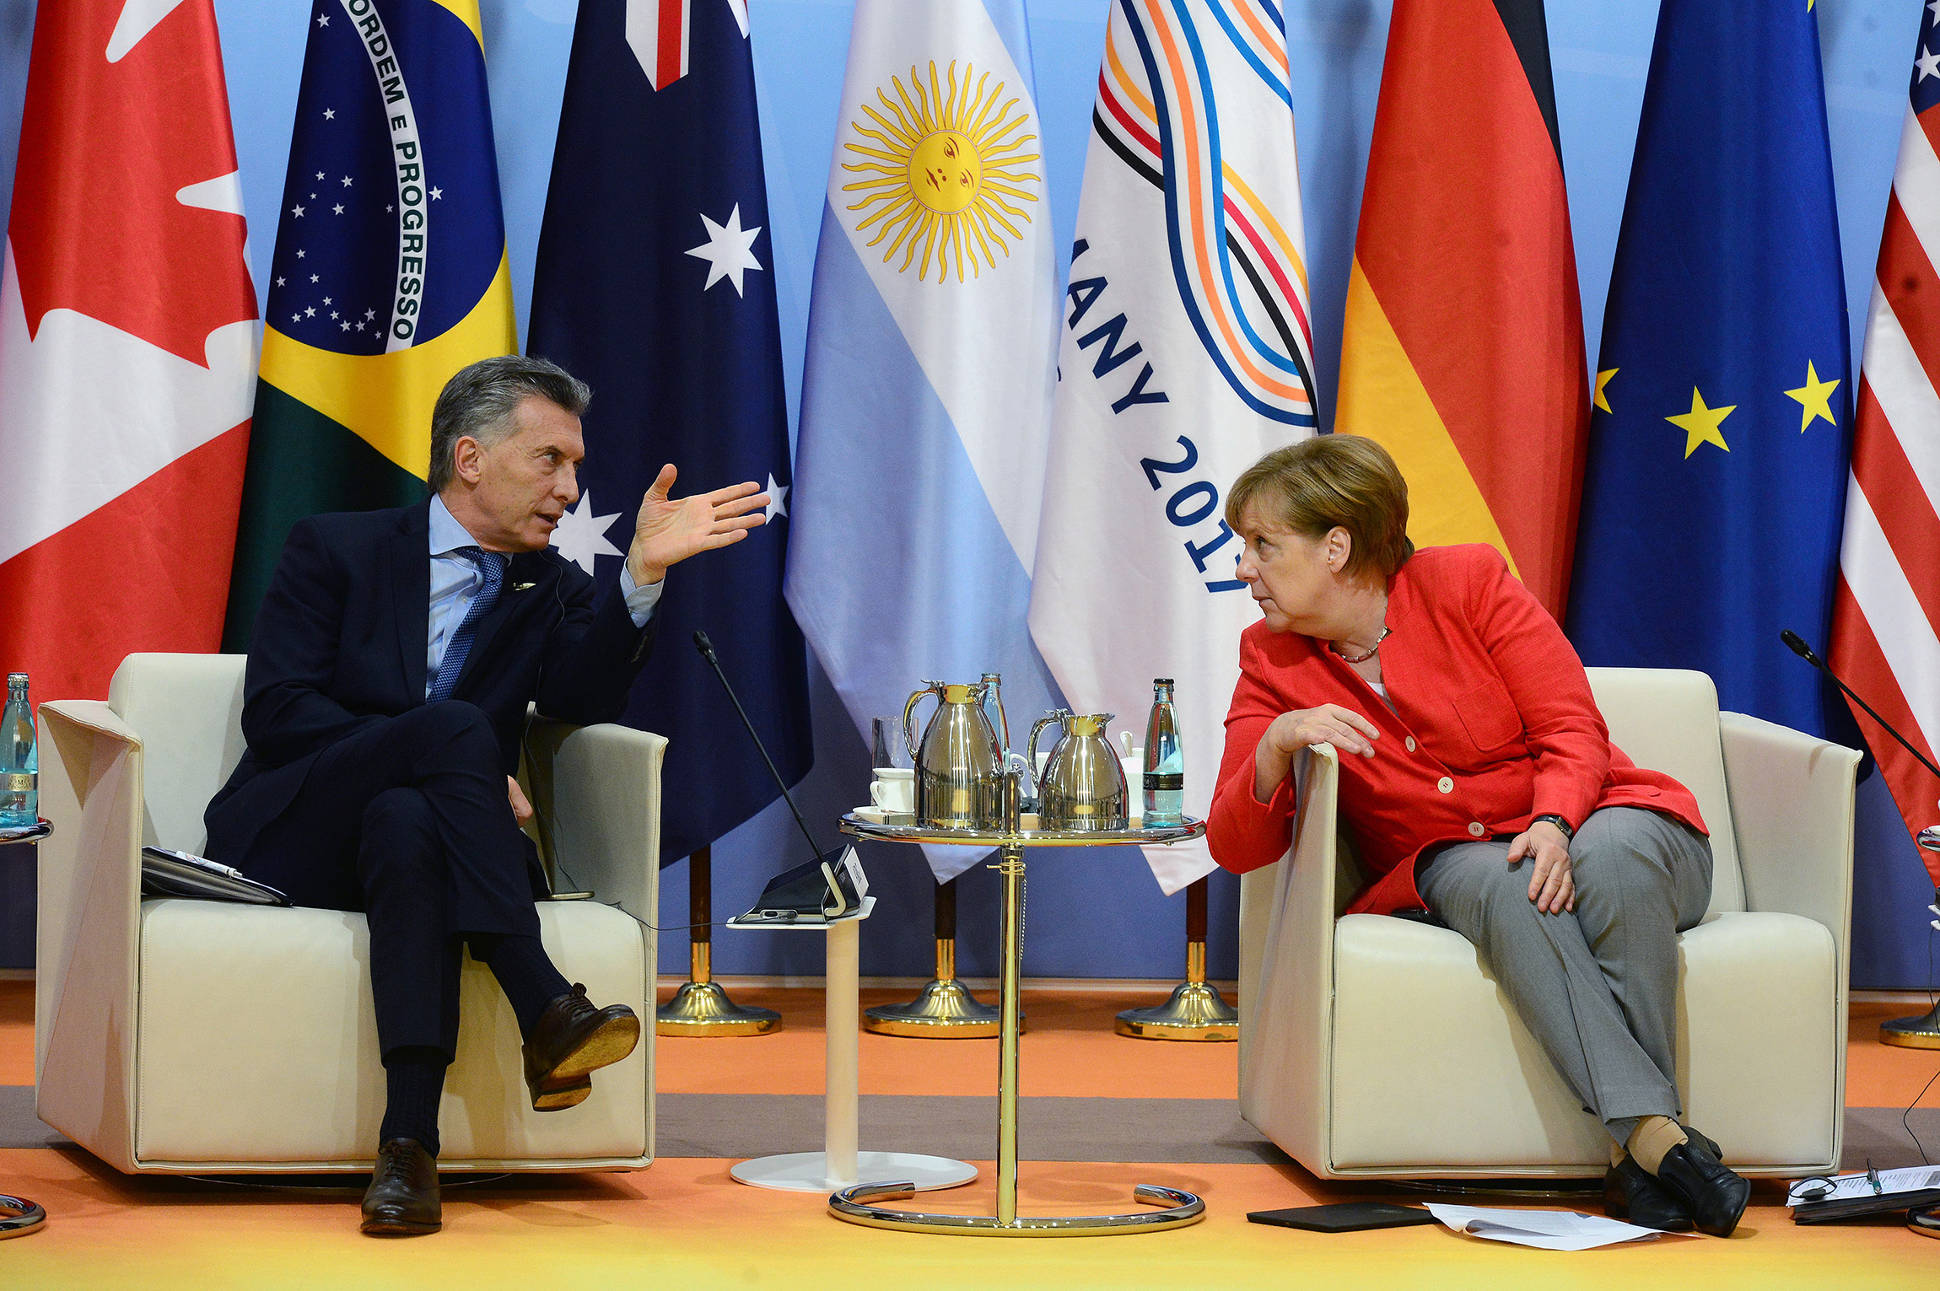 El presidente Macri, junto a Angela Merkel en la Cumbre del G20